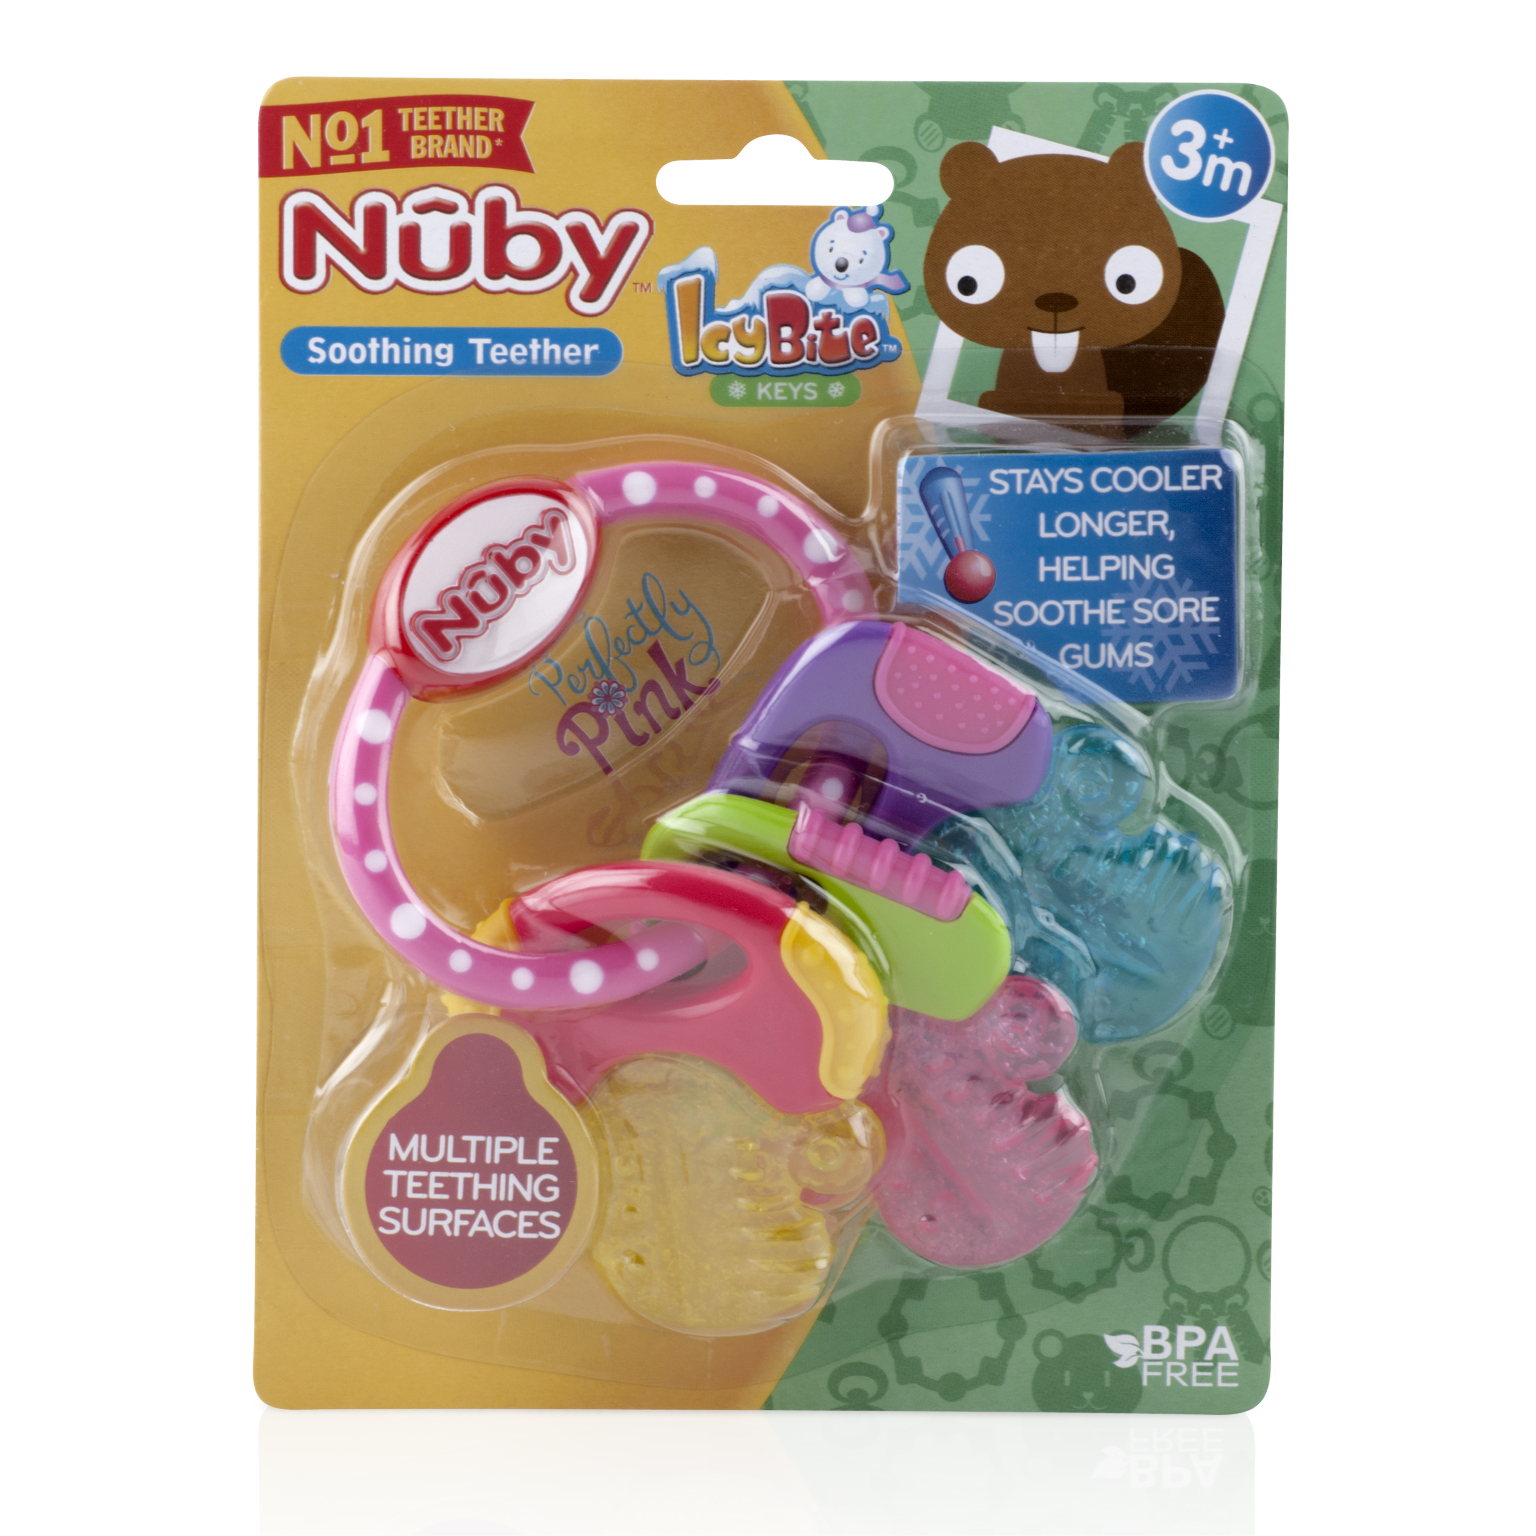 Wholesale Nuby Ice Gel Teething Keys Pink 3m Bpa Free Sku 2314950 Dollardays 